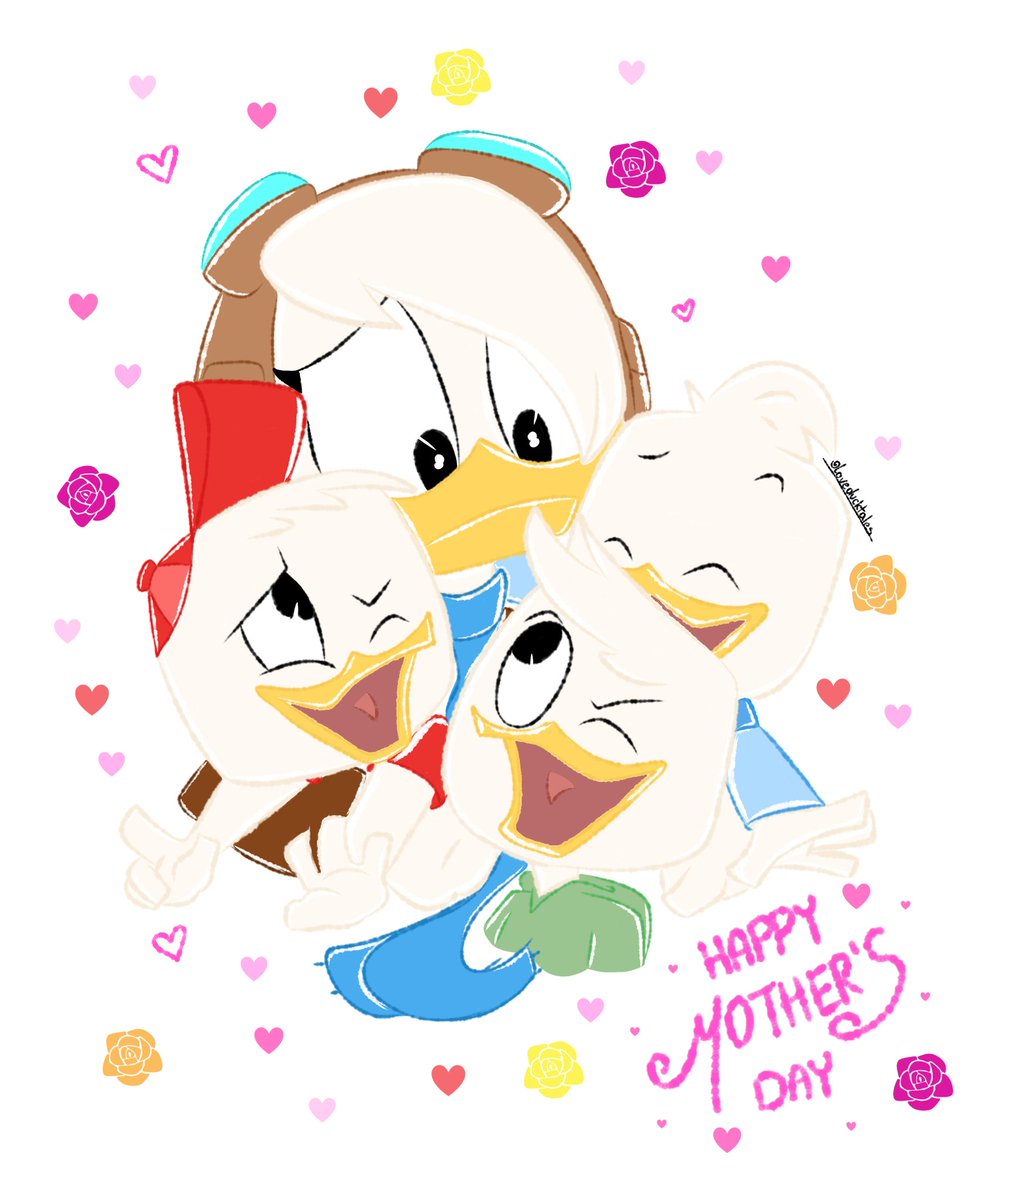 Happy #Mothersday ❤🌸
.
.
#Ducktales #Delladuck #Hueyduck #deweyduck #louieduck #ducktalesfanart #loveducktales